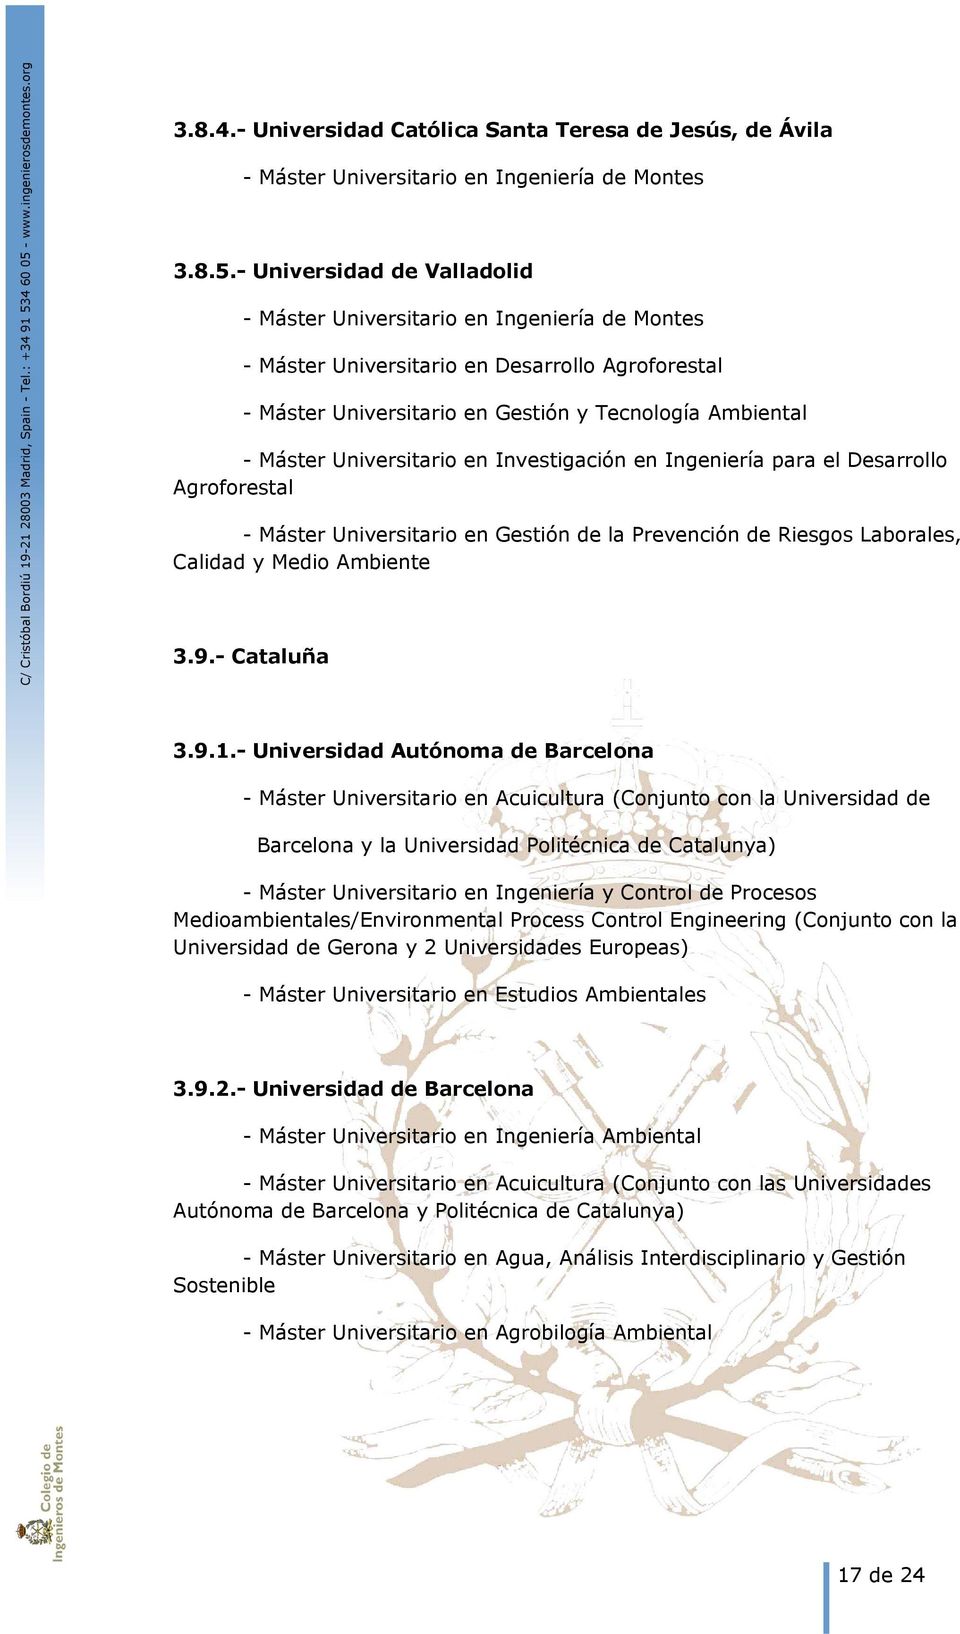 Universitario en Investigación en Ingeniería para el Desarrollo Agroforestal - Máster Universitario en Gestión de la Prevención de Riesgos Laborales, Calidad y Medio Ambiente 3.9.- Cataluña 3.9.1.